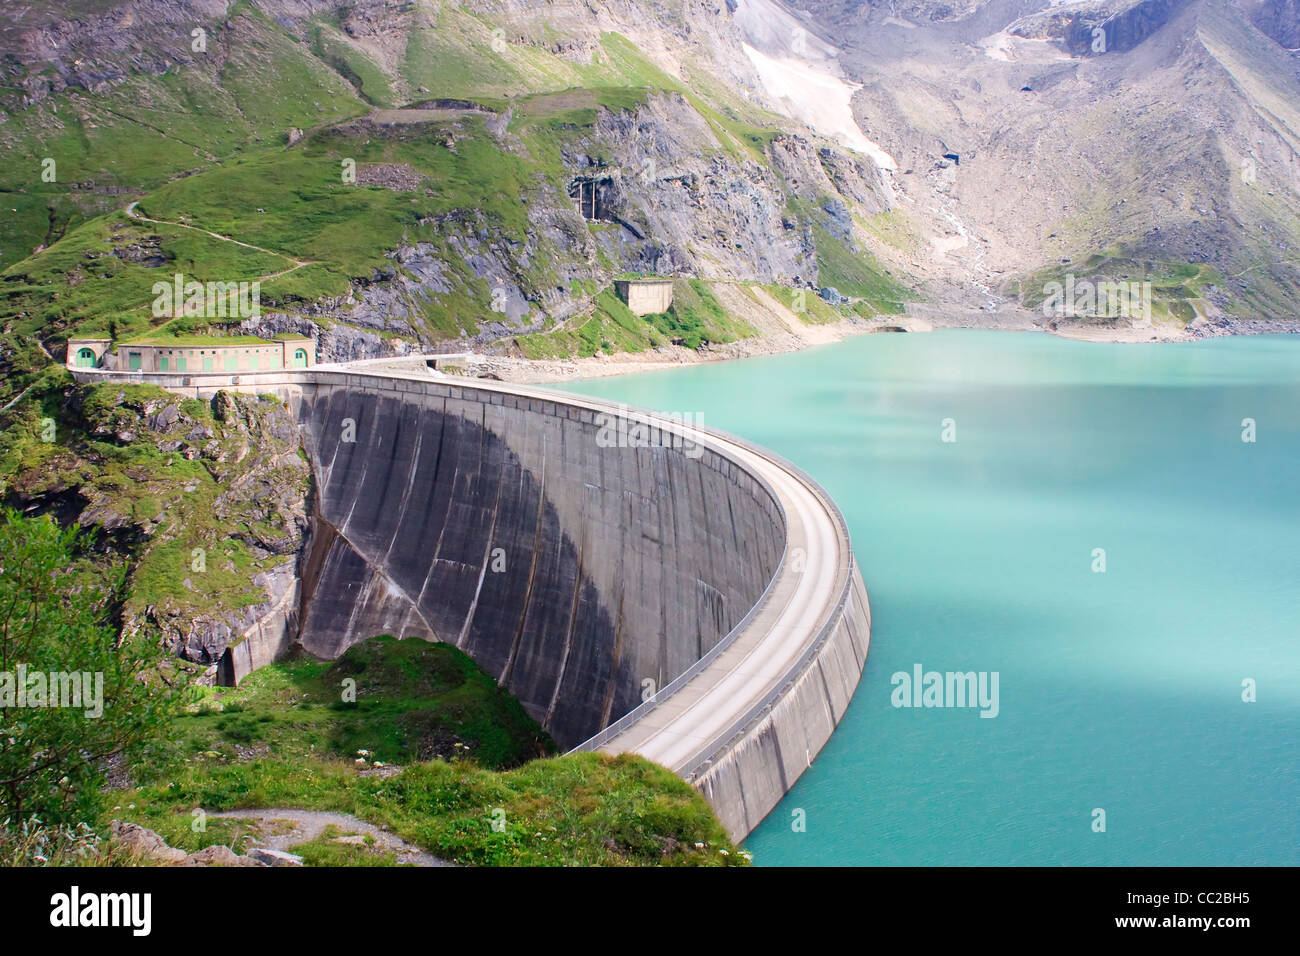 Mur de barrage en béton de Kaprun (pas de personnes), Alpes de Salzbourg, Autriche Banque D'Images